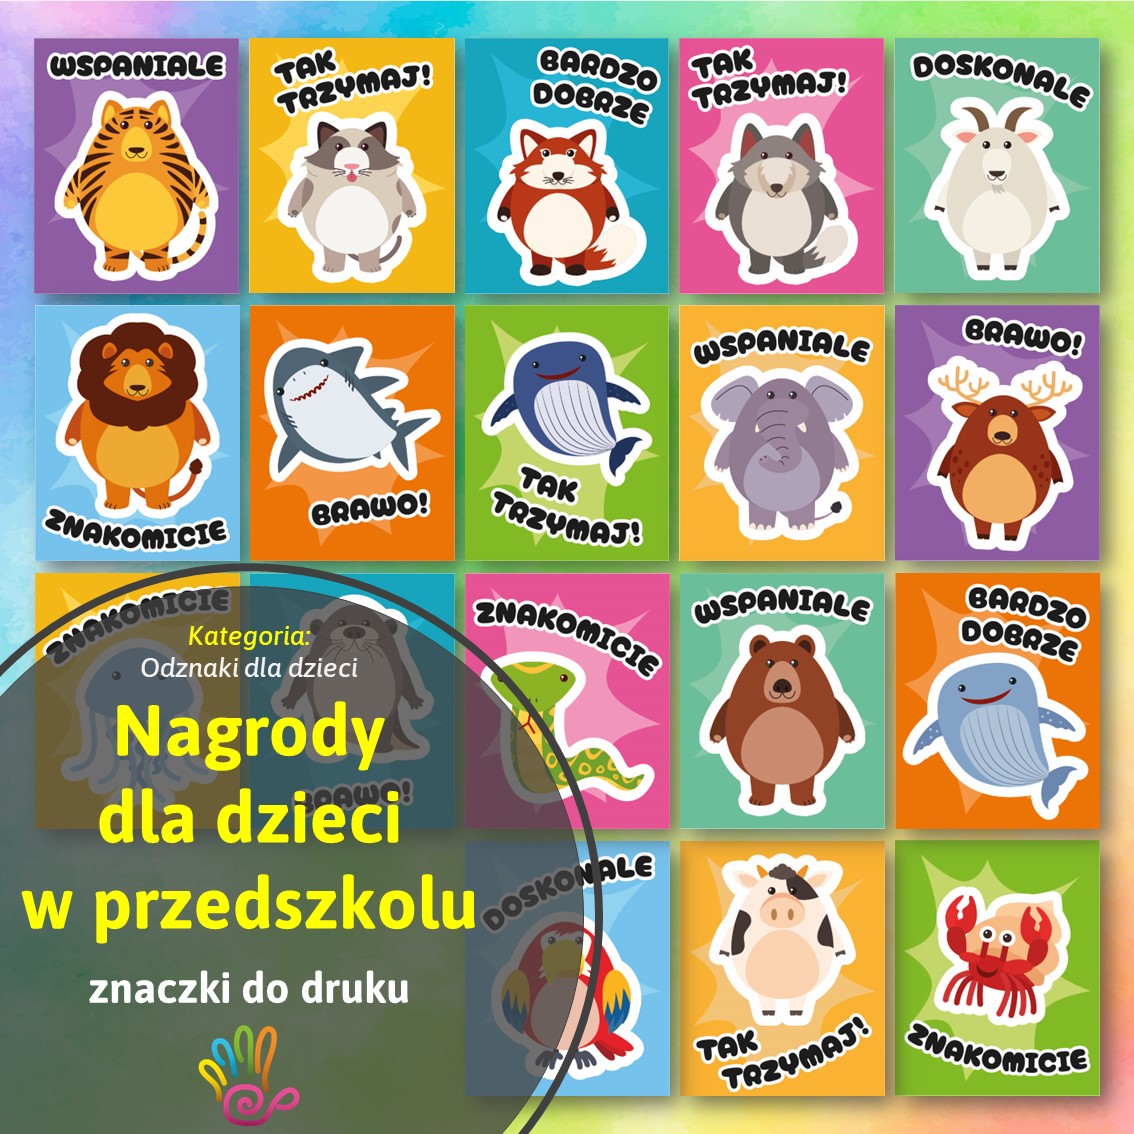 Nagrody dla dzieci w przedszkolu znaczki do druku pdf pomoce edukacyjne materiały dydaktyczne motywacja odznaki przedszkole szkoła ćwiczenia